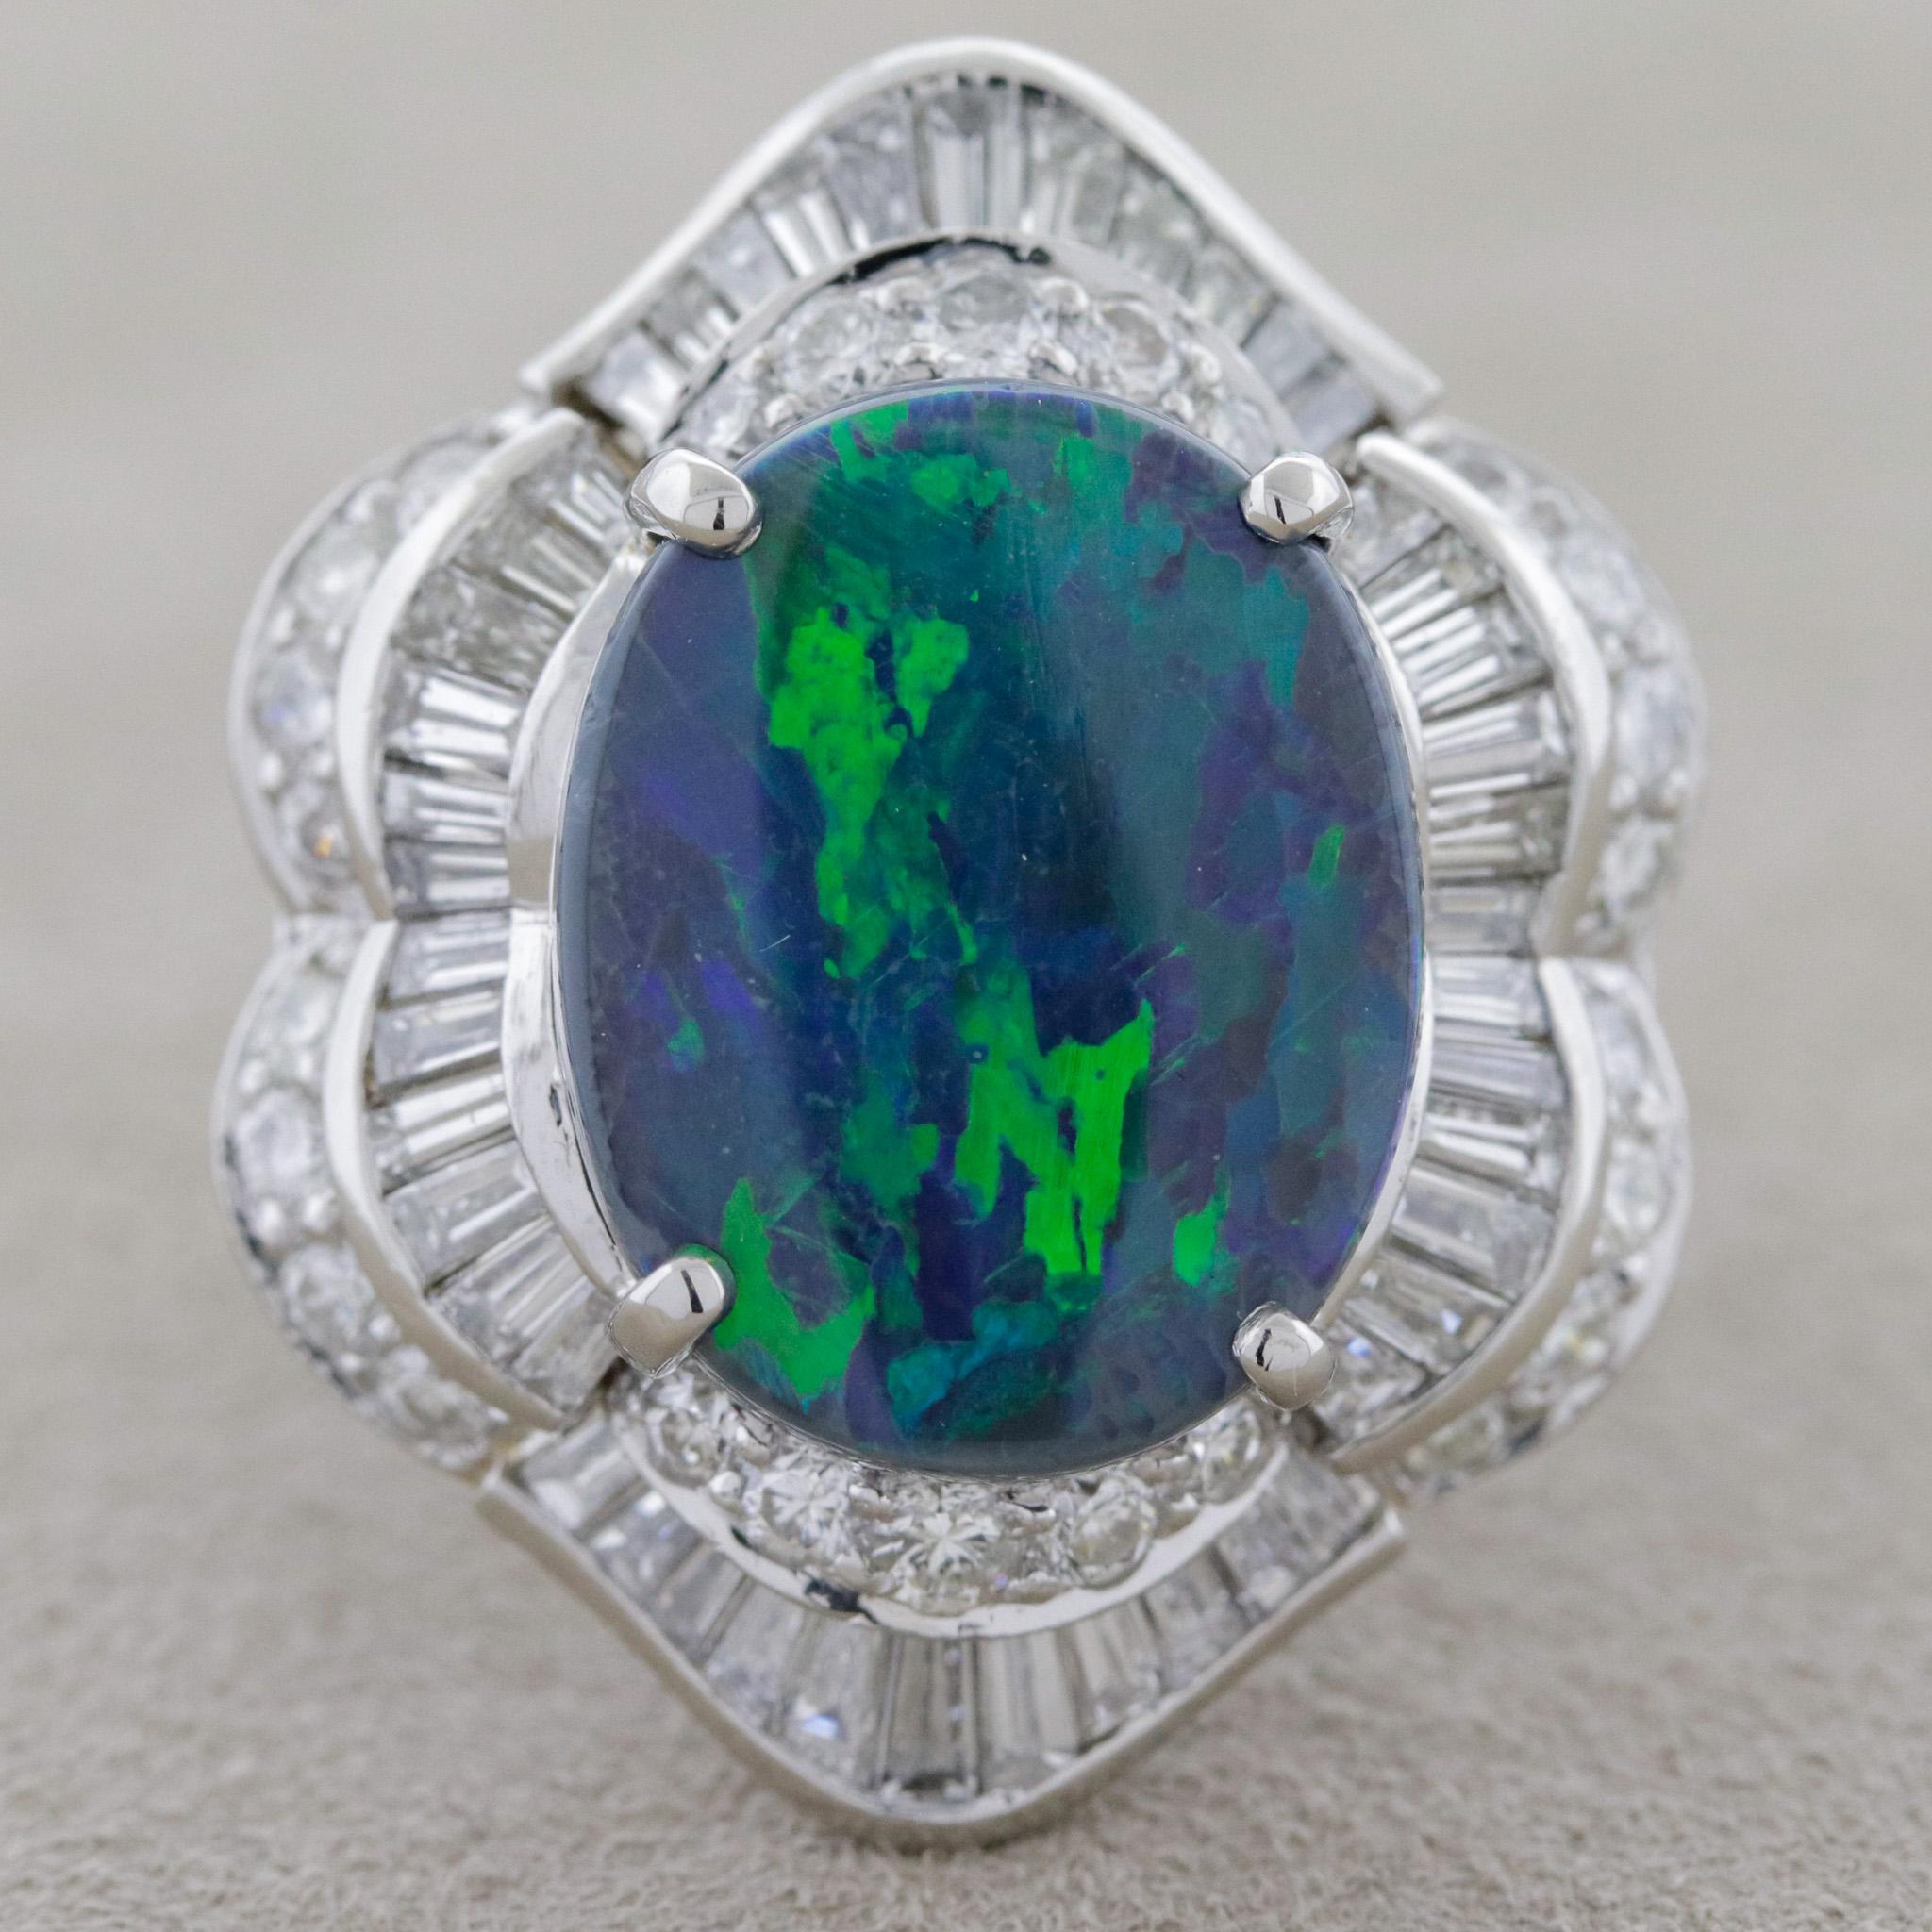 Une grande et impressionnante bague de cocktail avec une opale noire australienne fine et gemmeuse ! L'opale pèse 5,80 carats et présente un excellent jeu de couleurs. De grands éclats lumineux proéminents de vert et de bleu émanent de la surface de